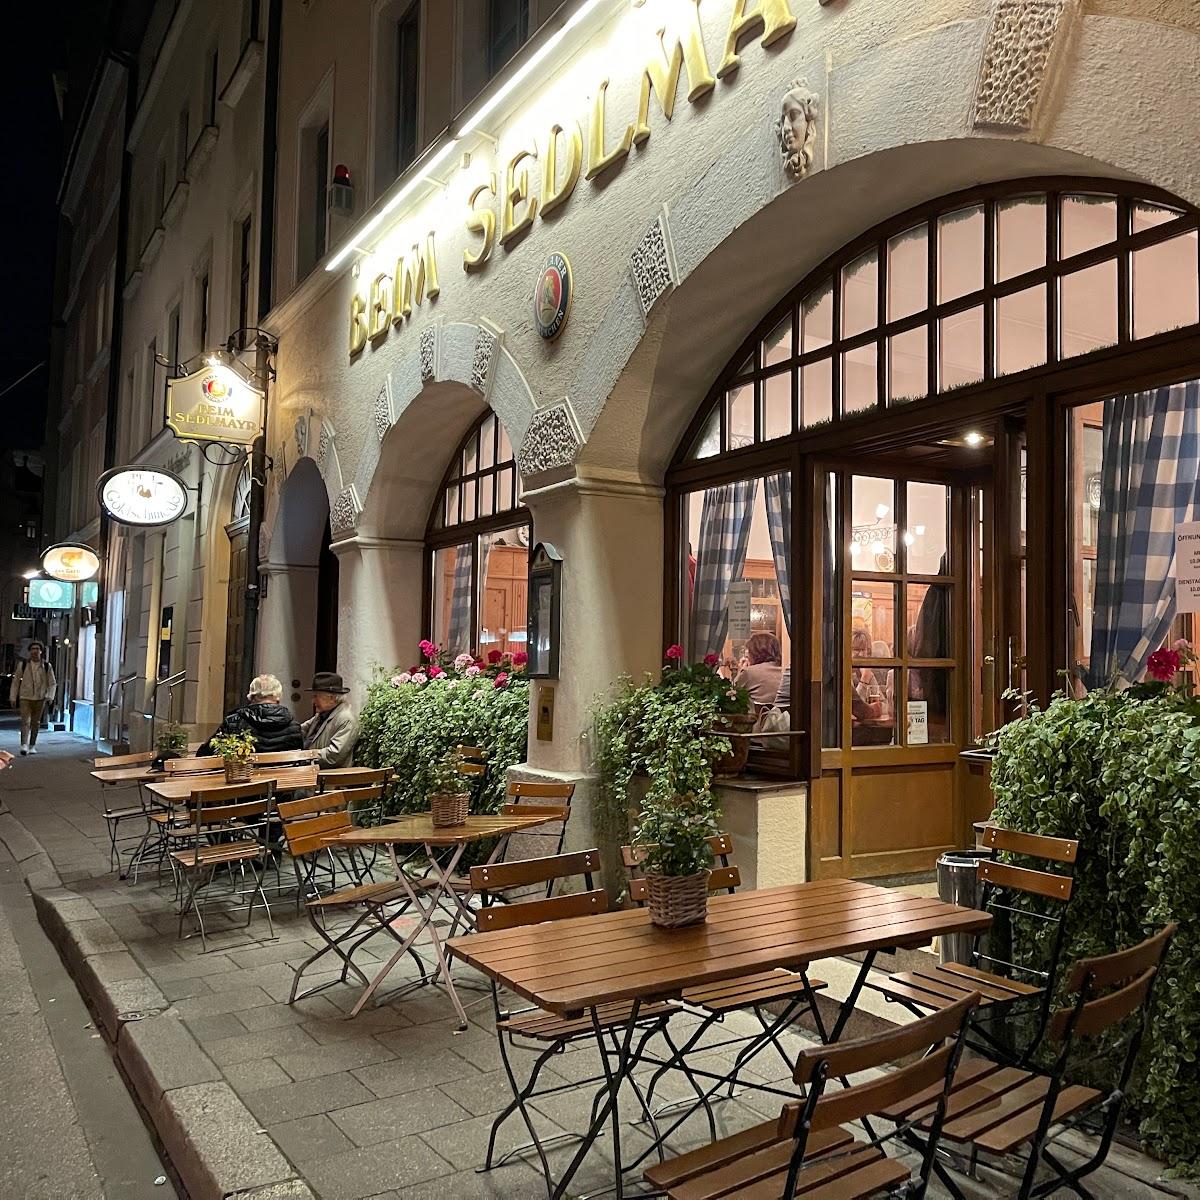 Restaurant "Beim Sedlmayr" in München